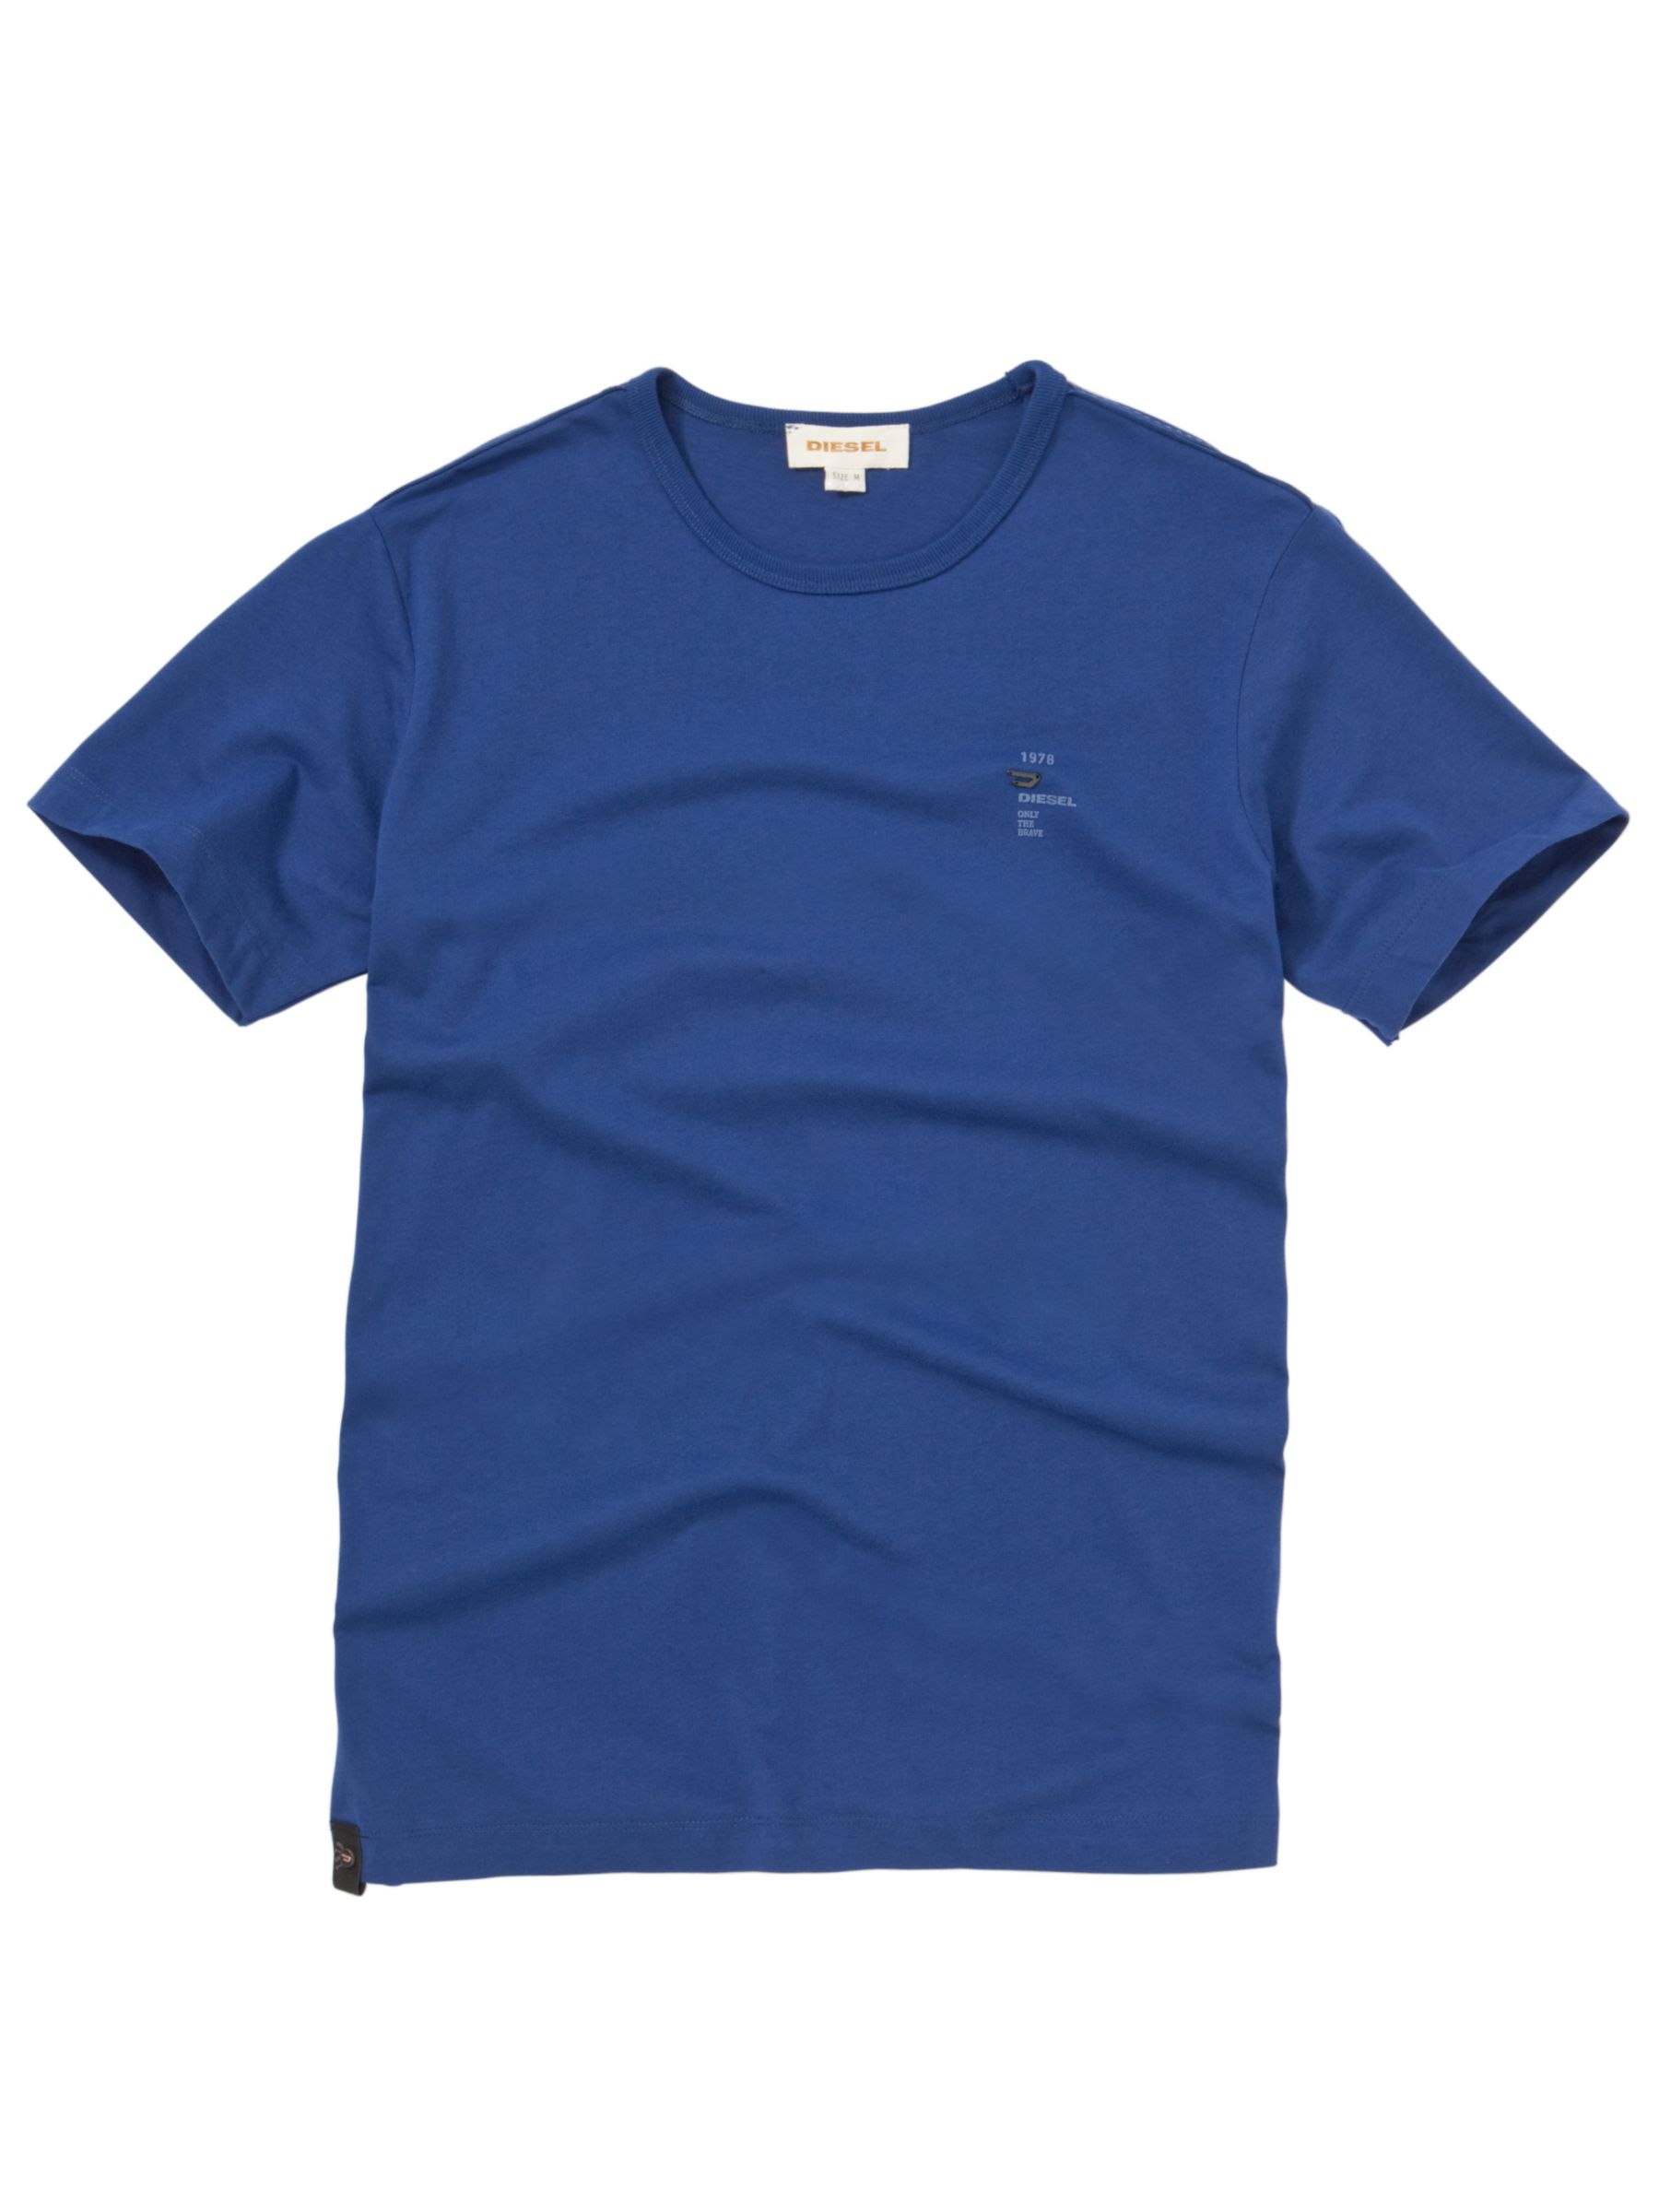 Diesel T-Calor Basic Short-Sleeve T-Shirt, Royal